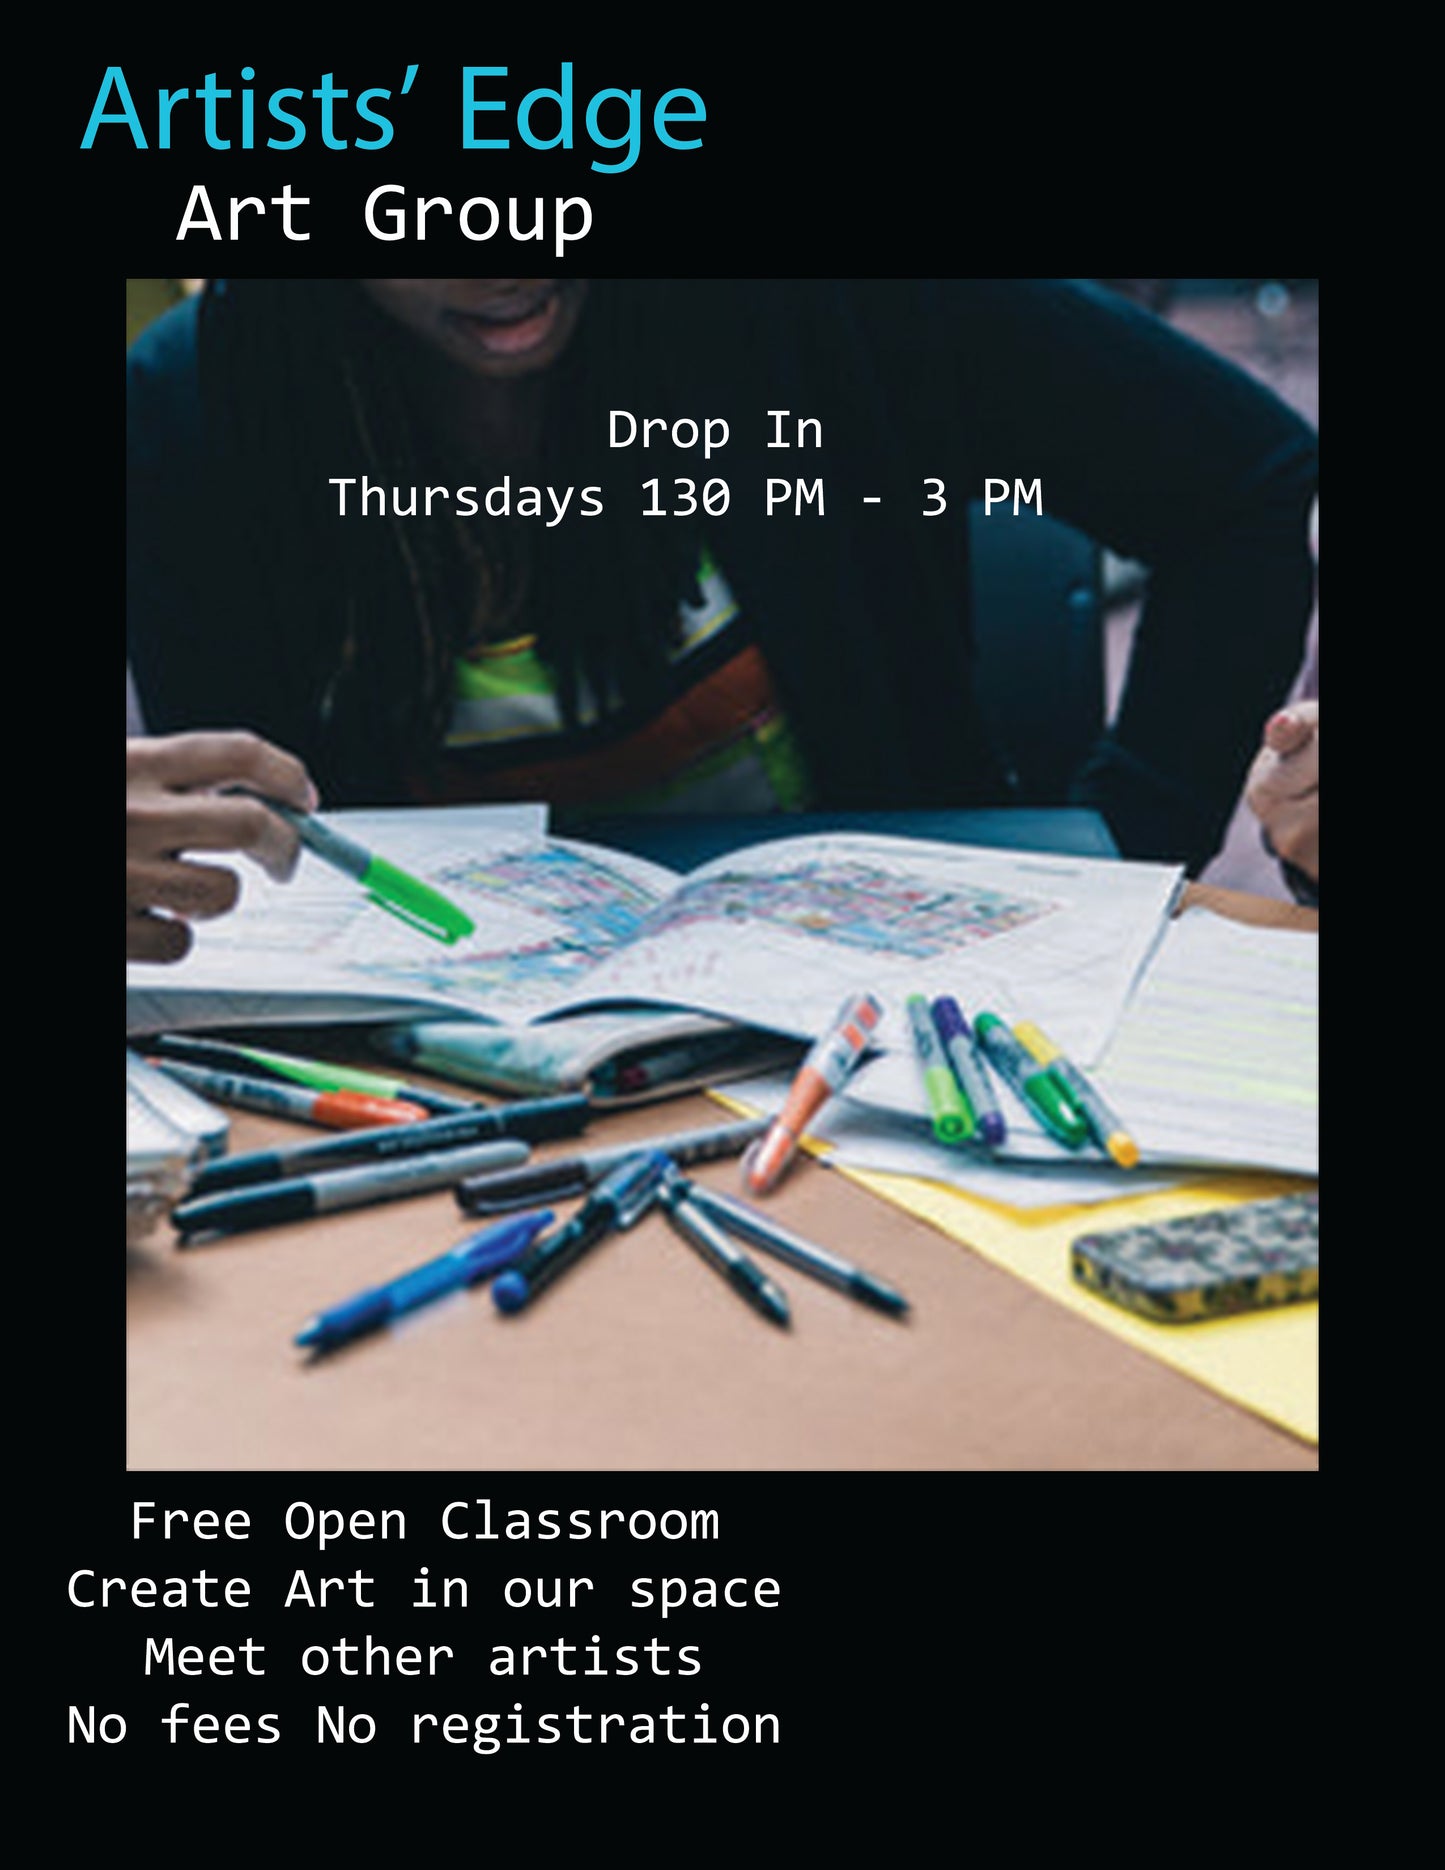 Art Group Open Classroom